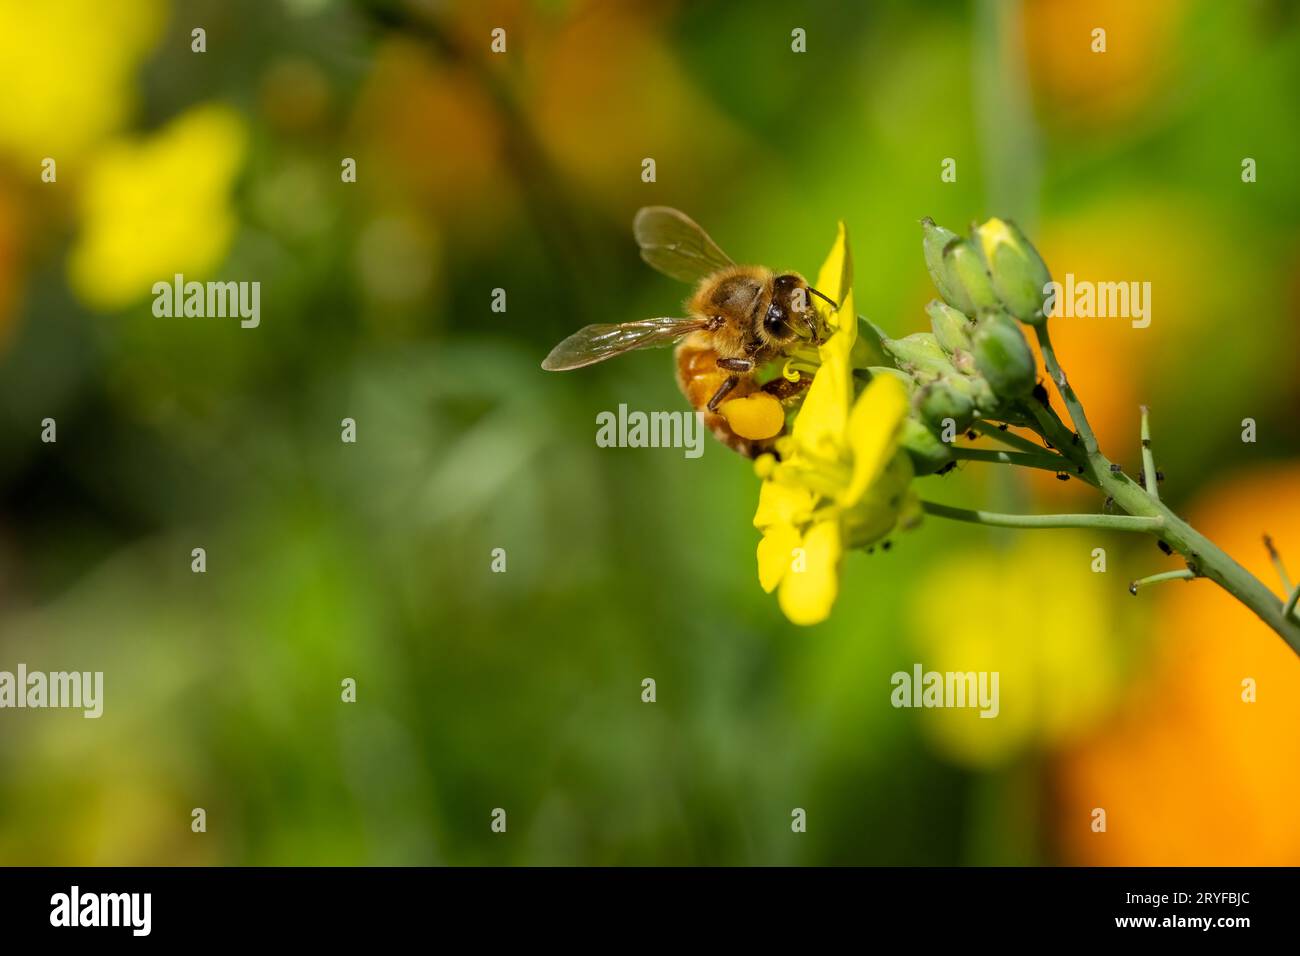 Issaquah, Washington, USA.  Honeybee on arugula gone to flower. Stock Photo